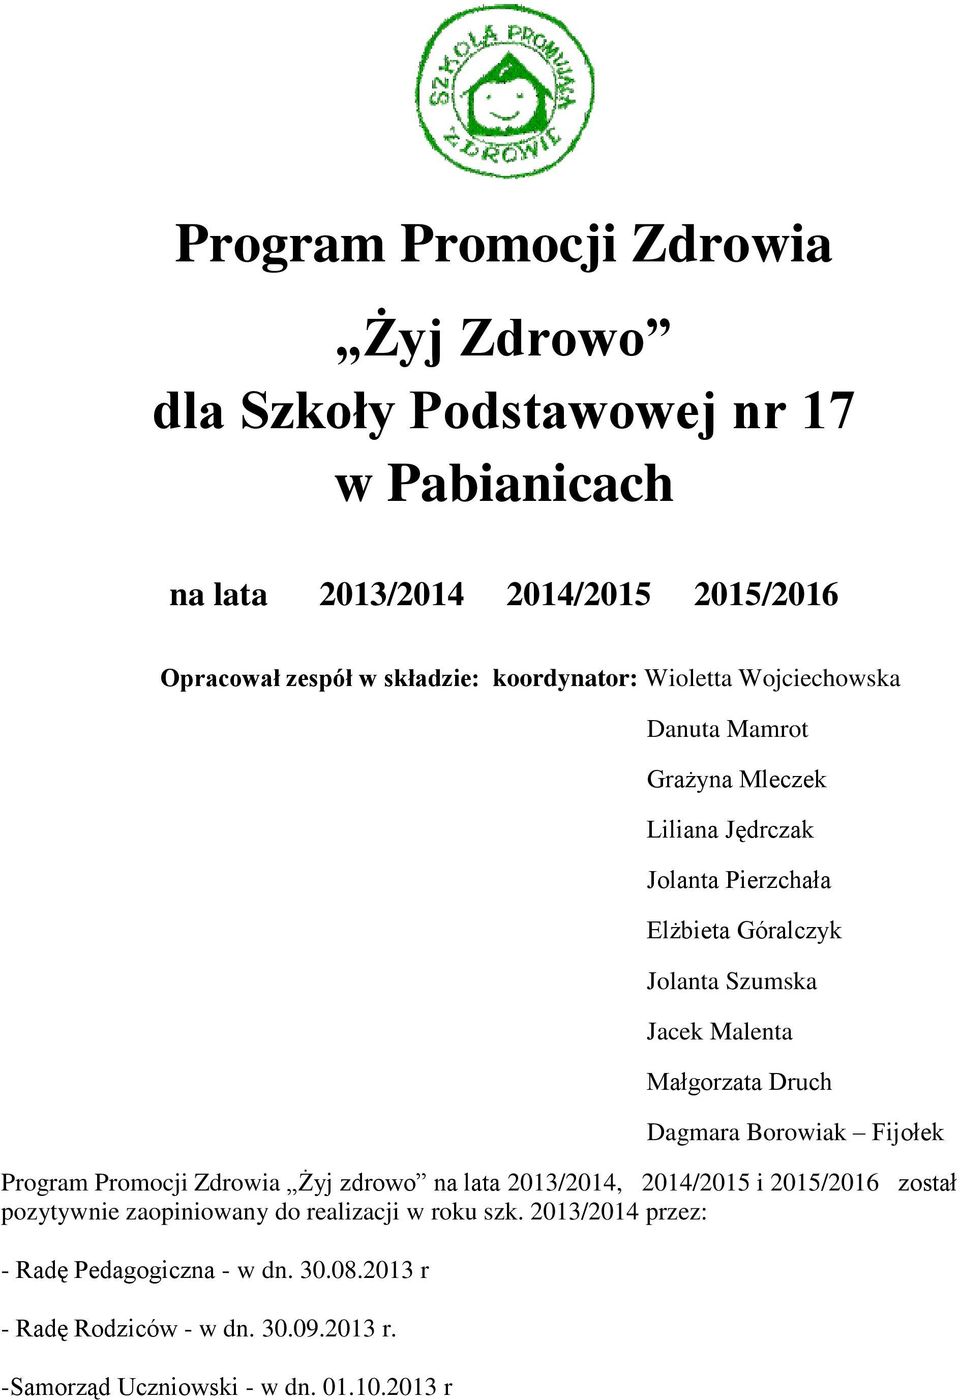 Małgorzata Druch Dagmara Borowiak Fijołek Program Promocji Zdrowia Żyj zdrowo na lata 2013/2014, 2014/2015 i 2015/2016 został pozytywnie zaopiniowany do